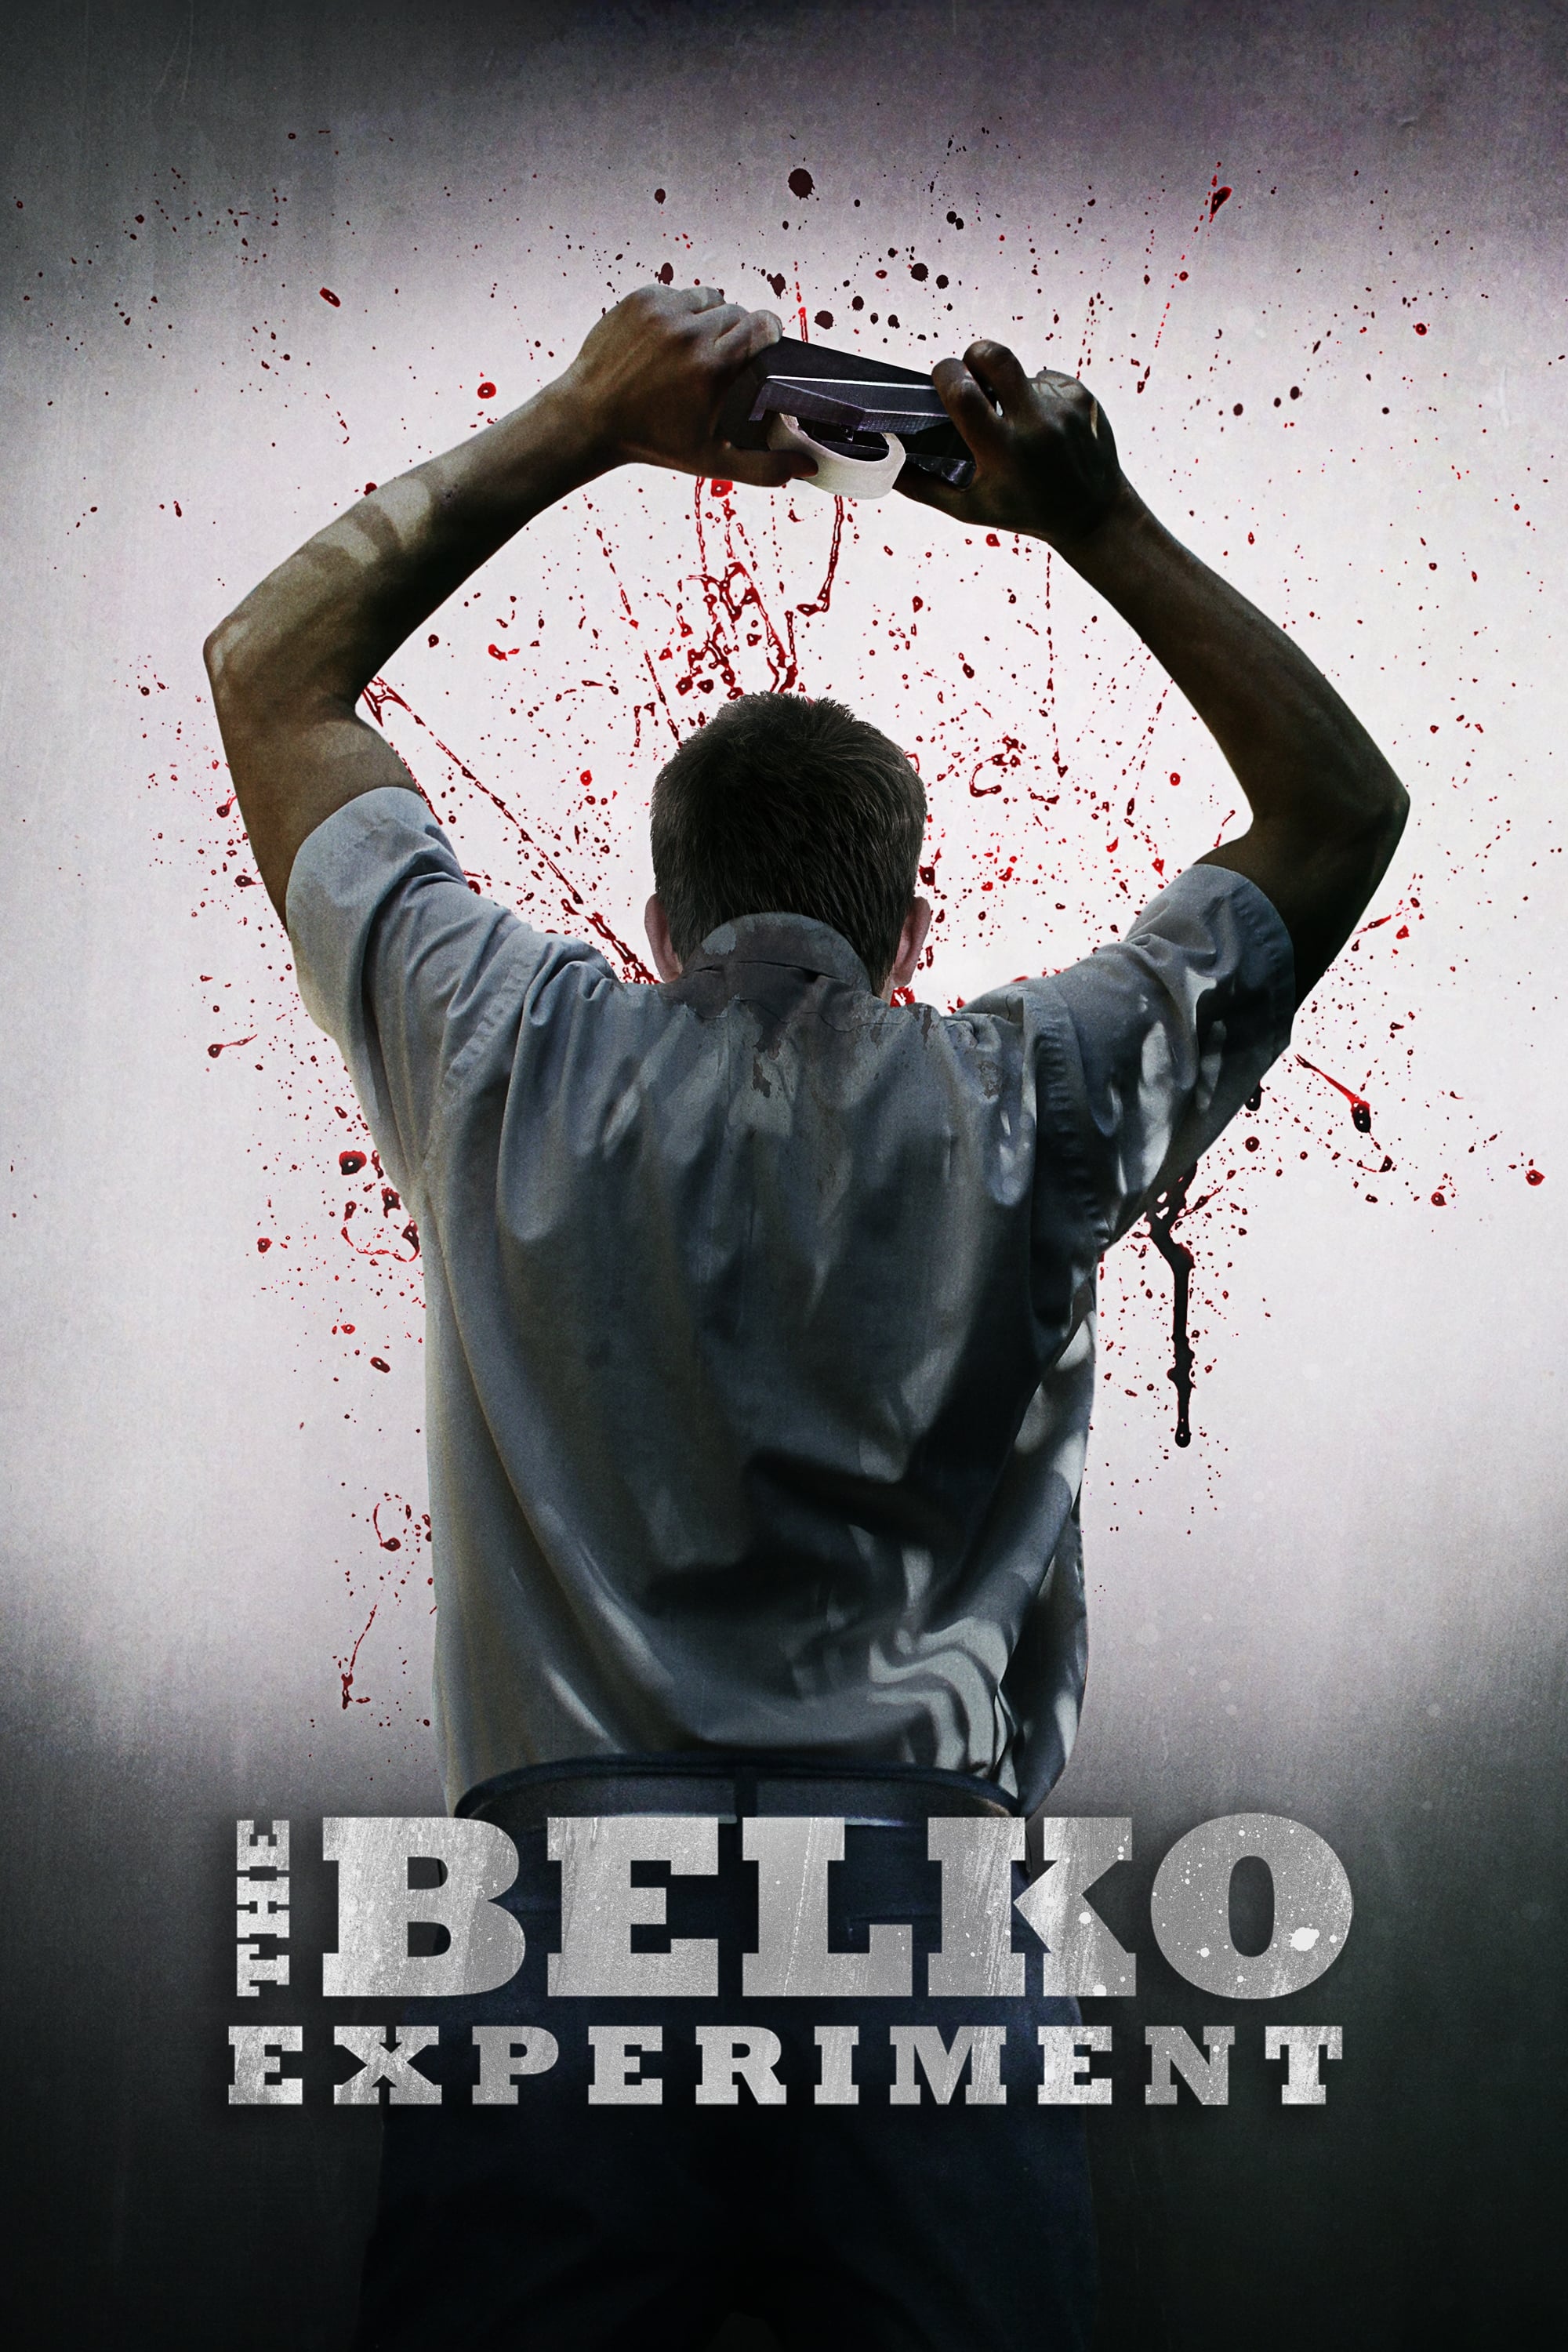 Das Belko Experiment